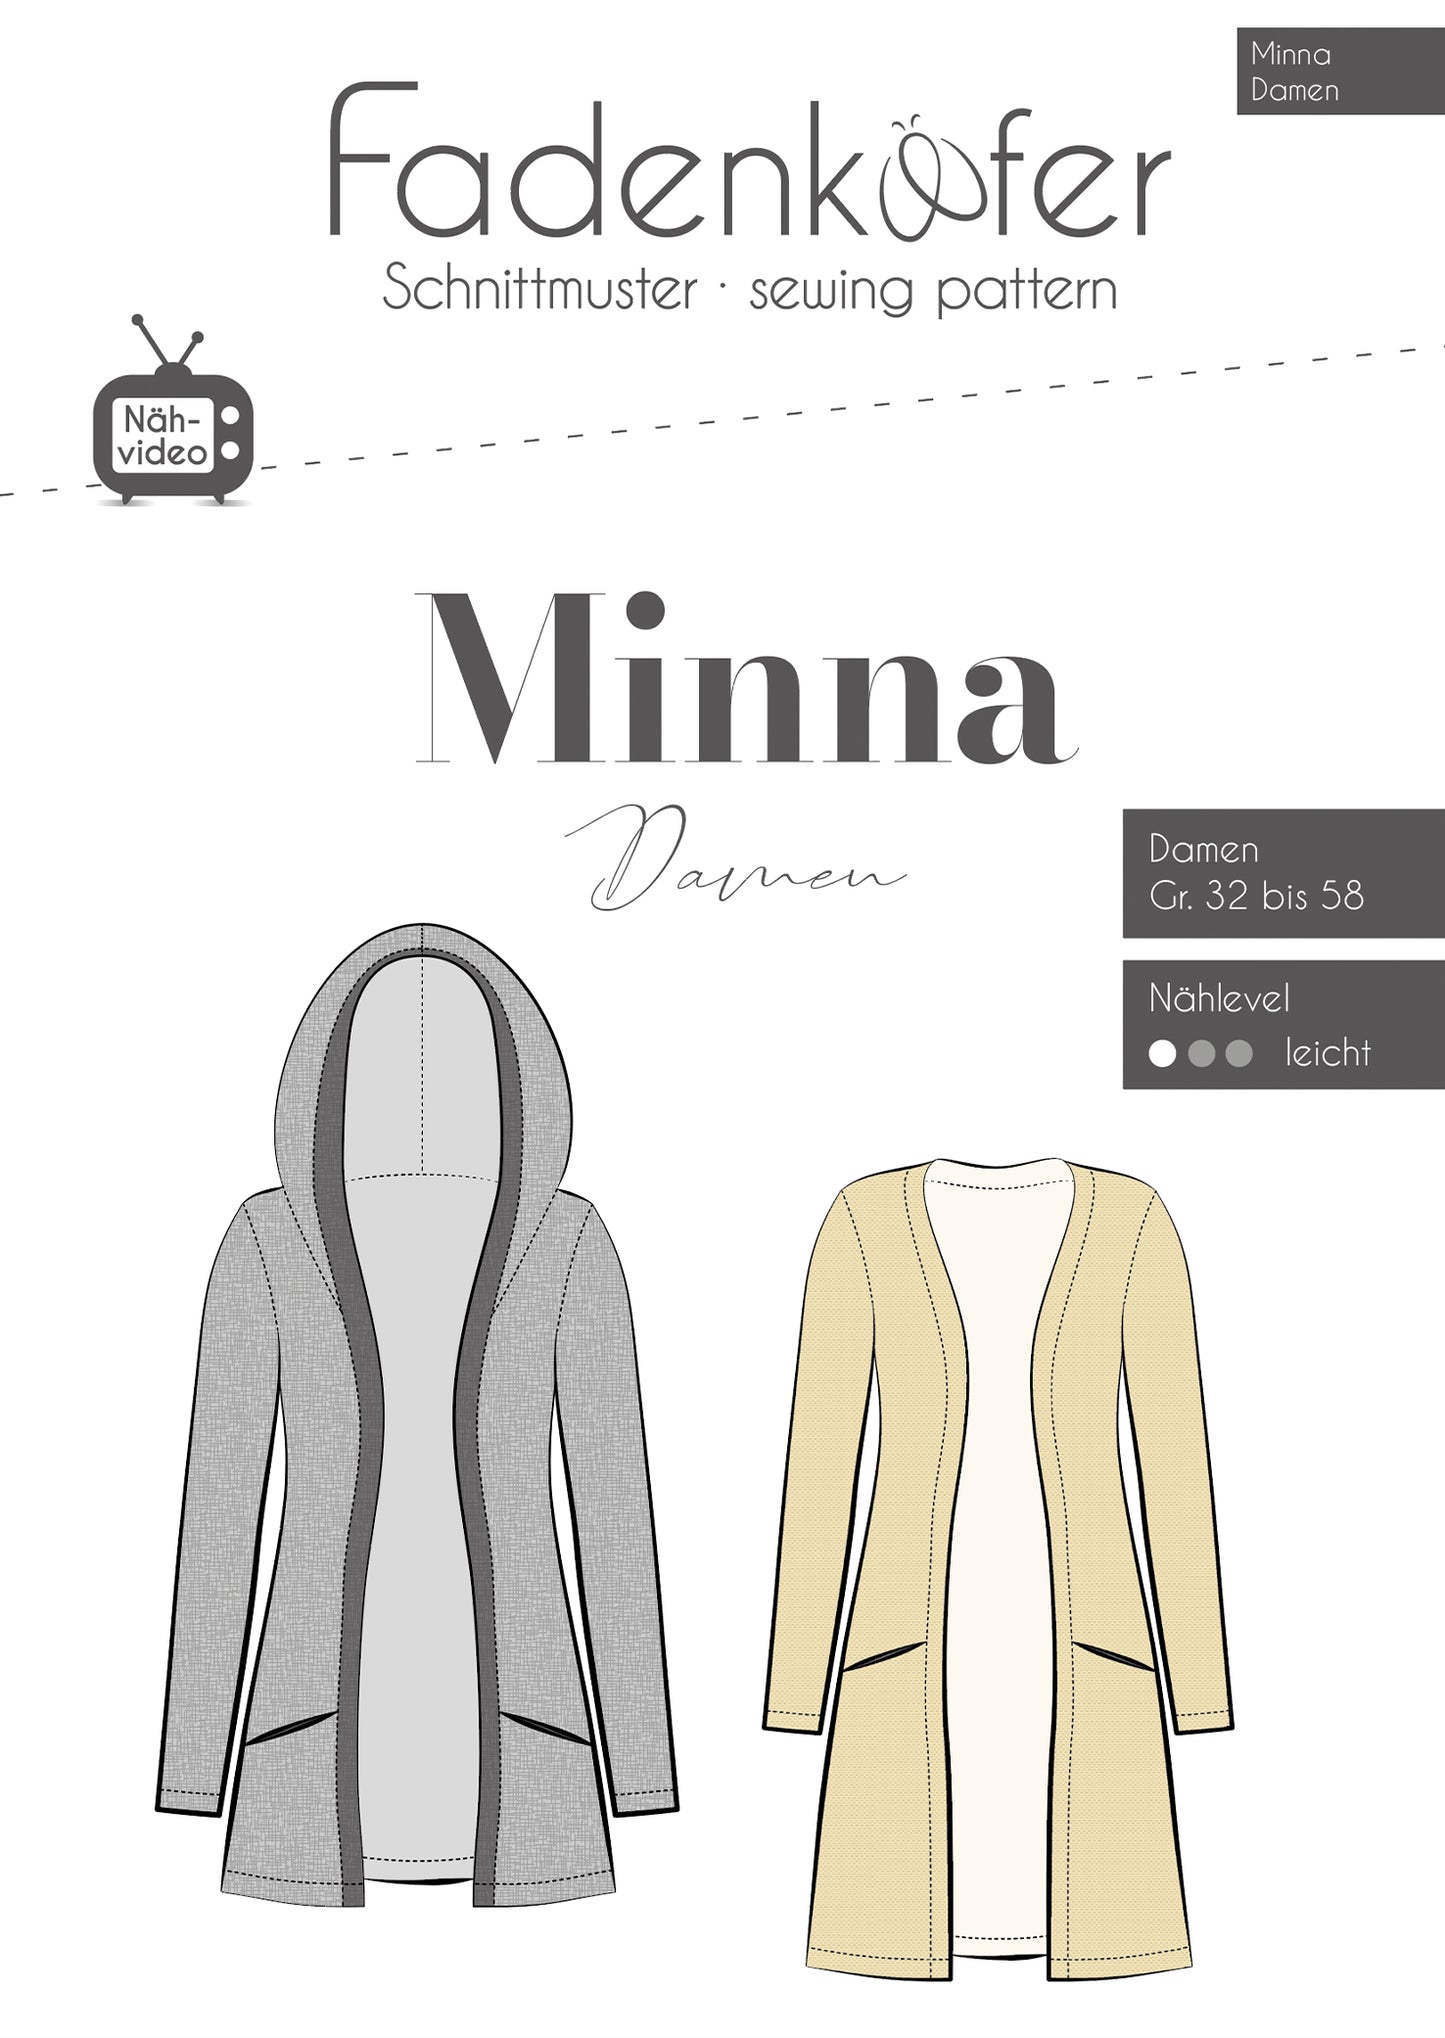 Strickjacke "Minna" für Damen von Fadenkäfer